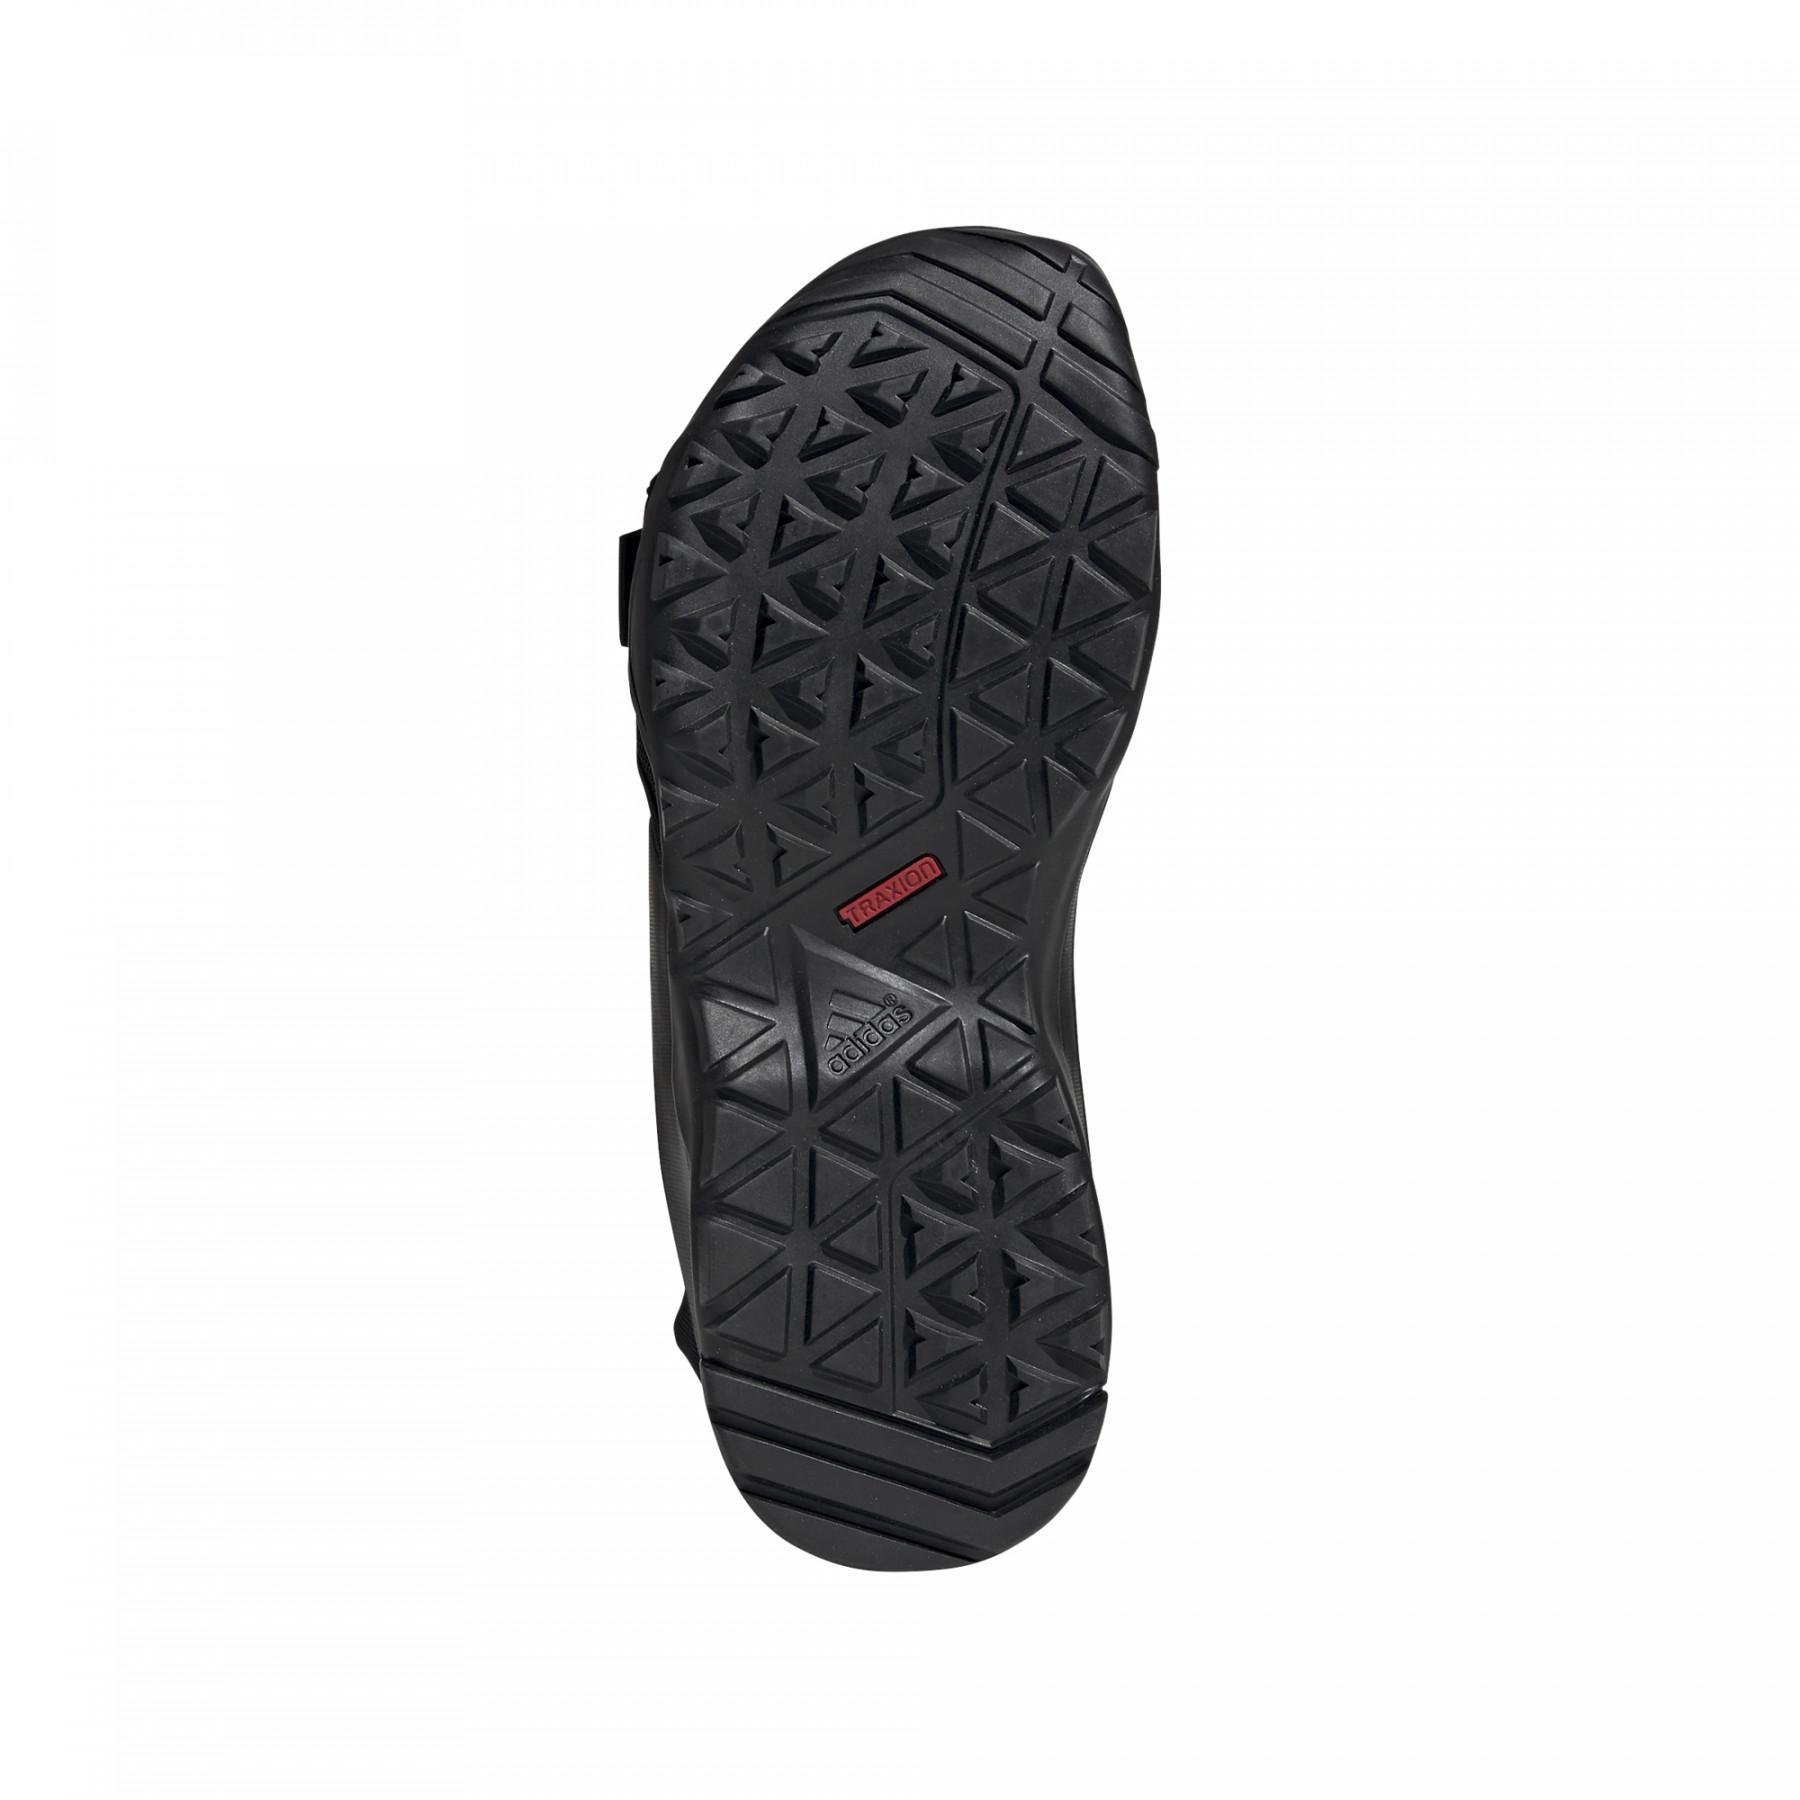 Sandal adidas Cyprex Ultra DLX